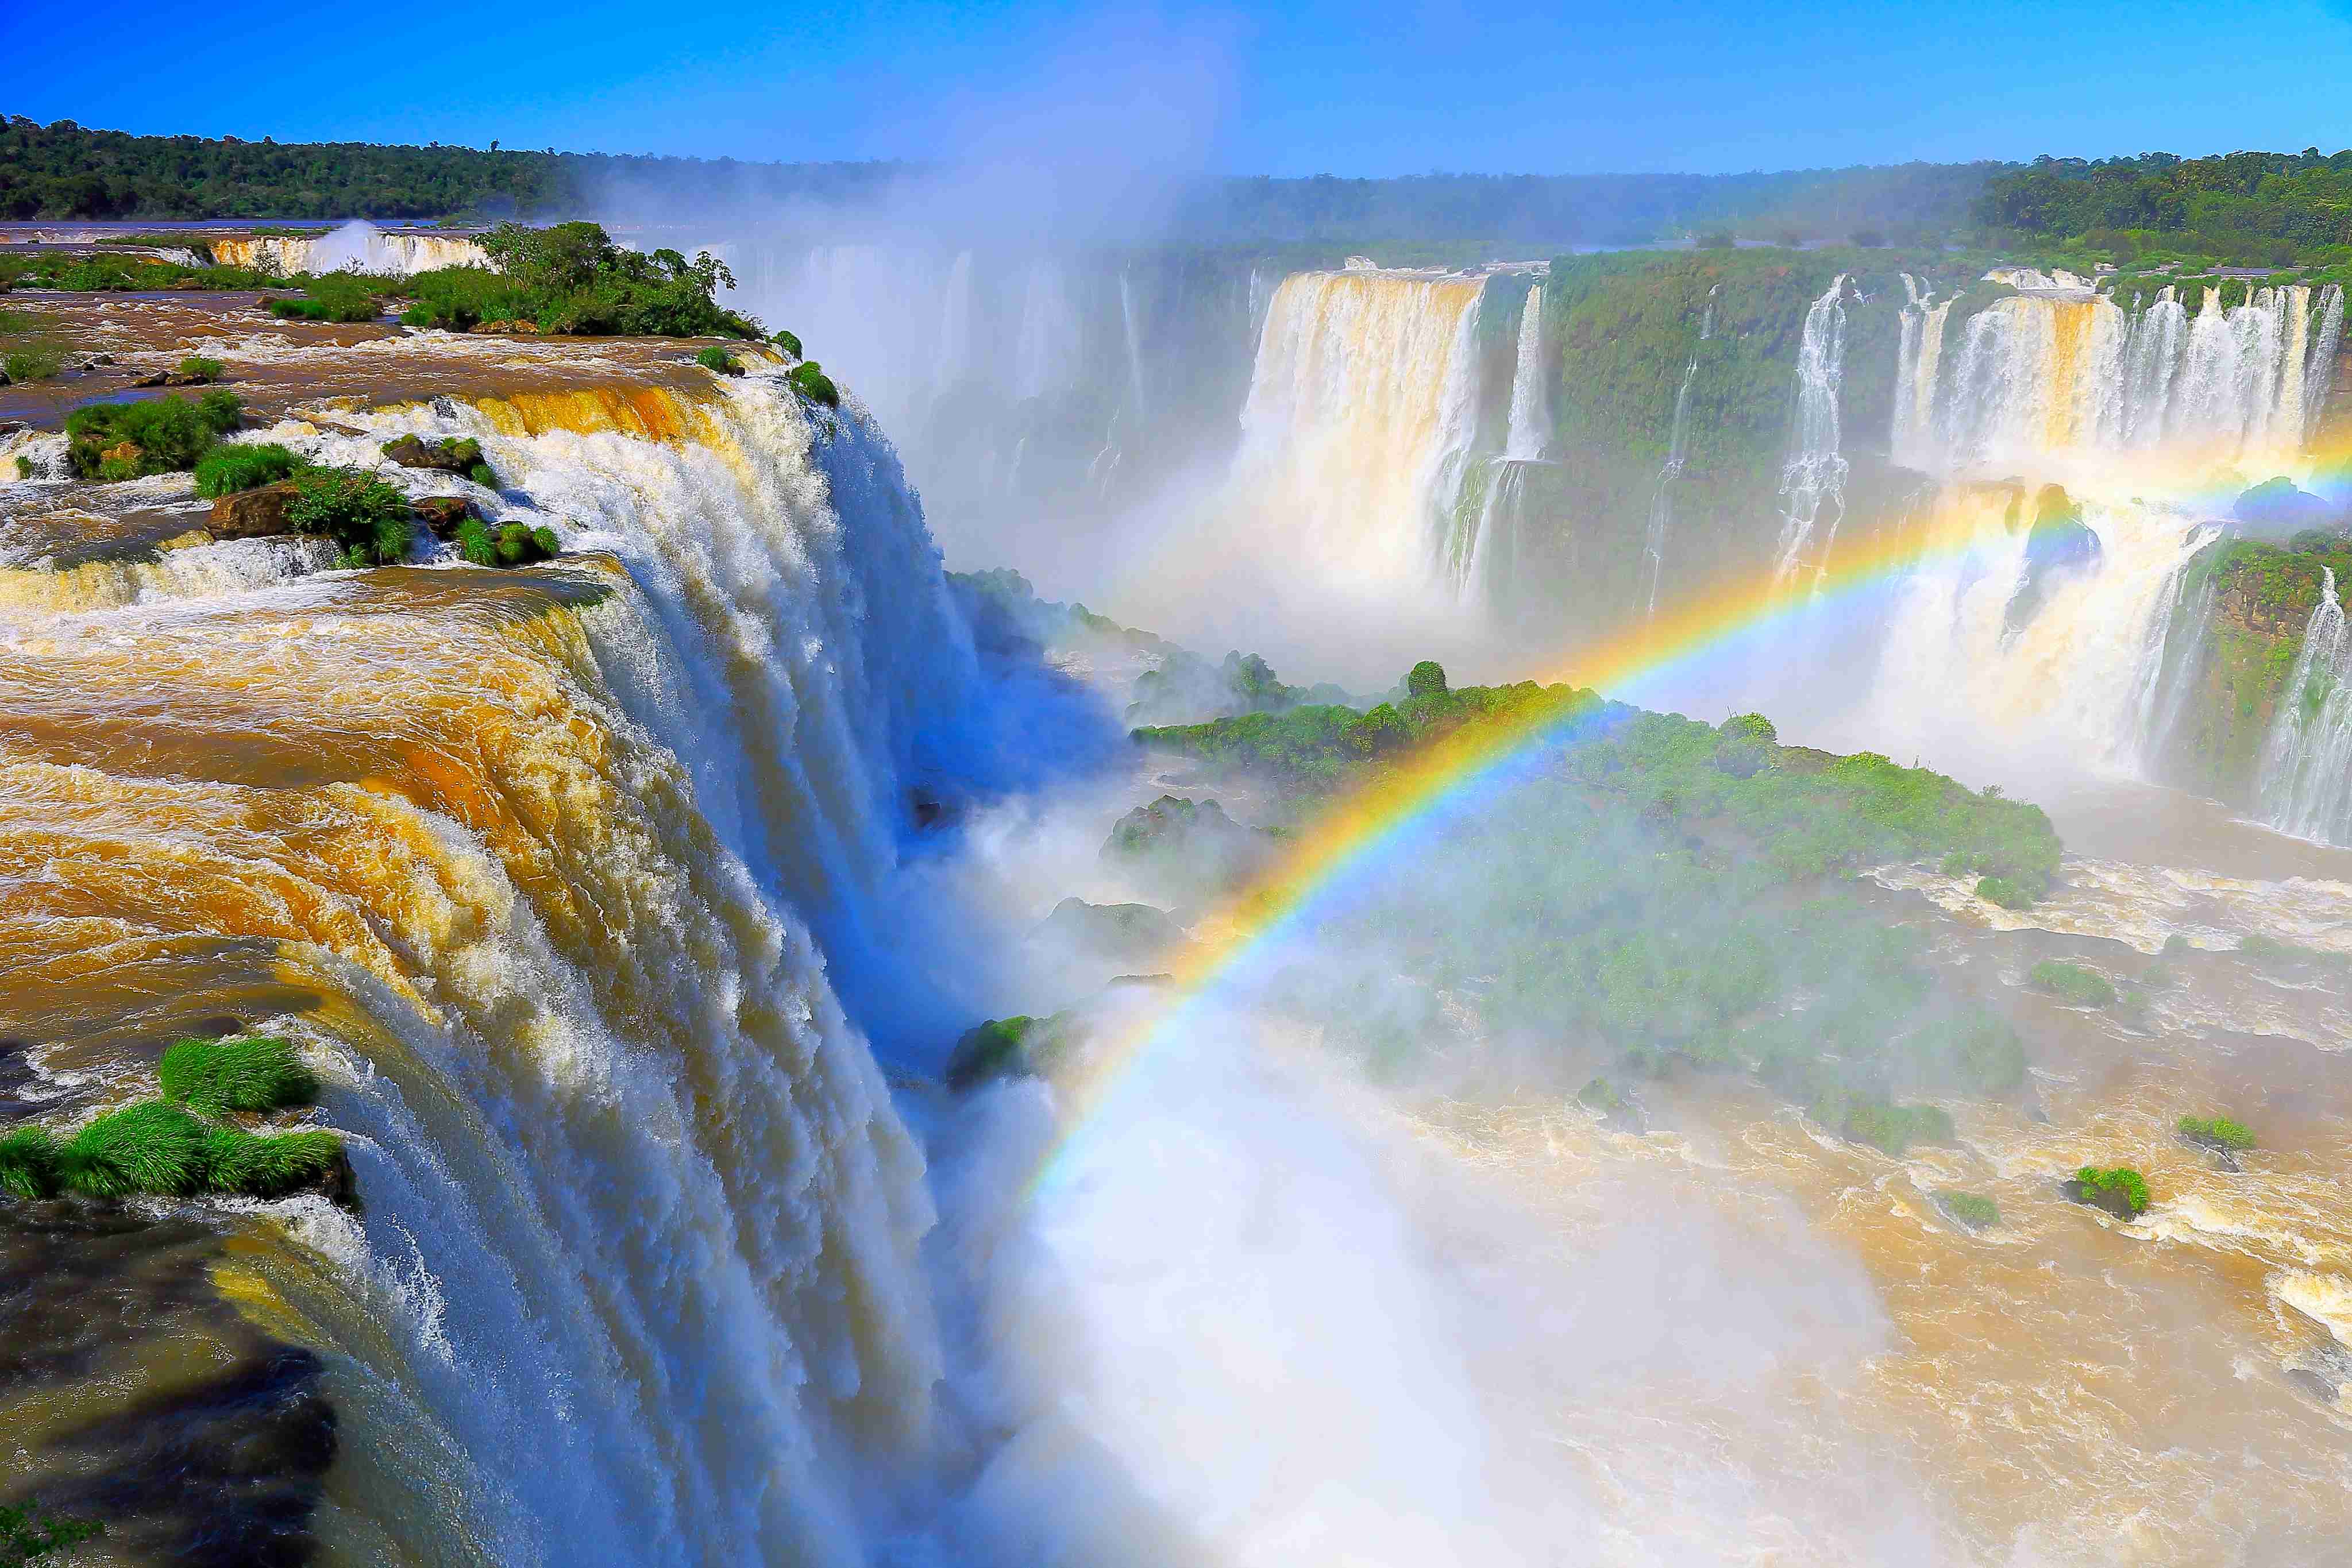 Les chutes d’eau d’Iguazú